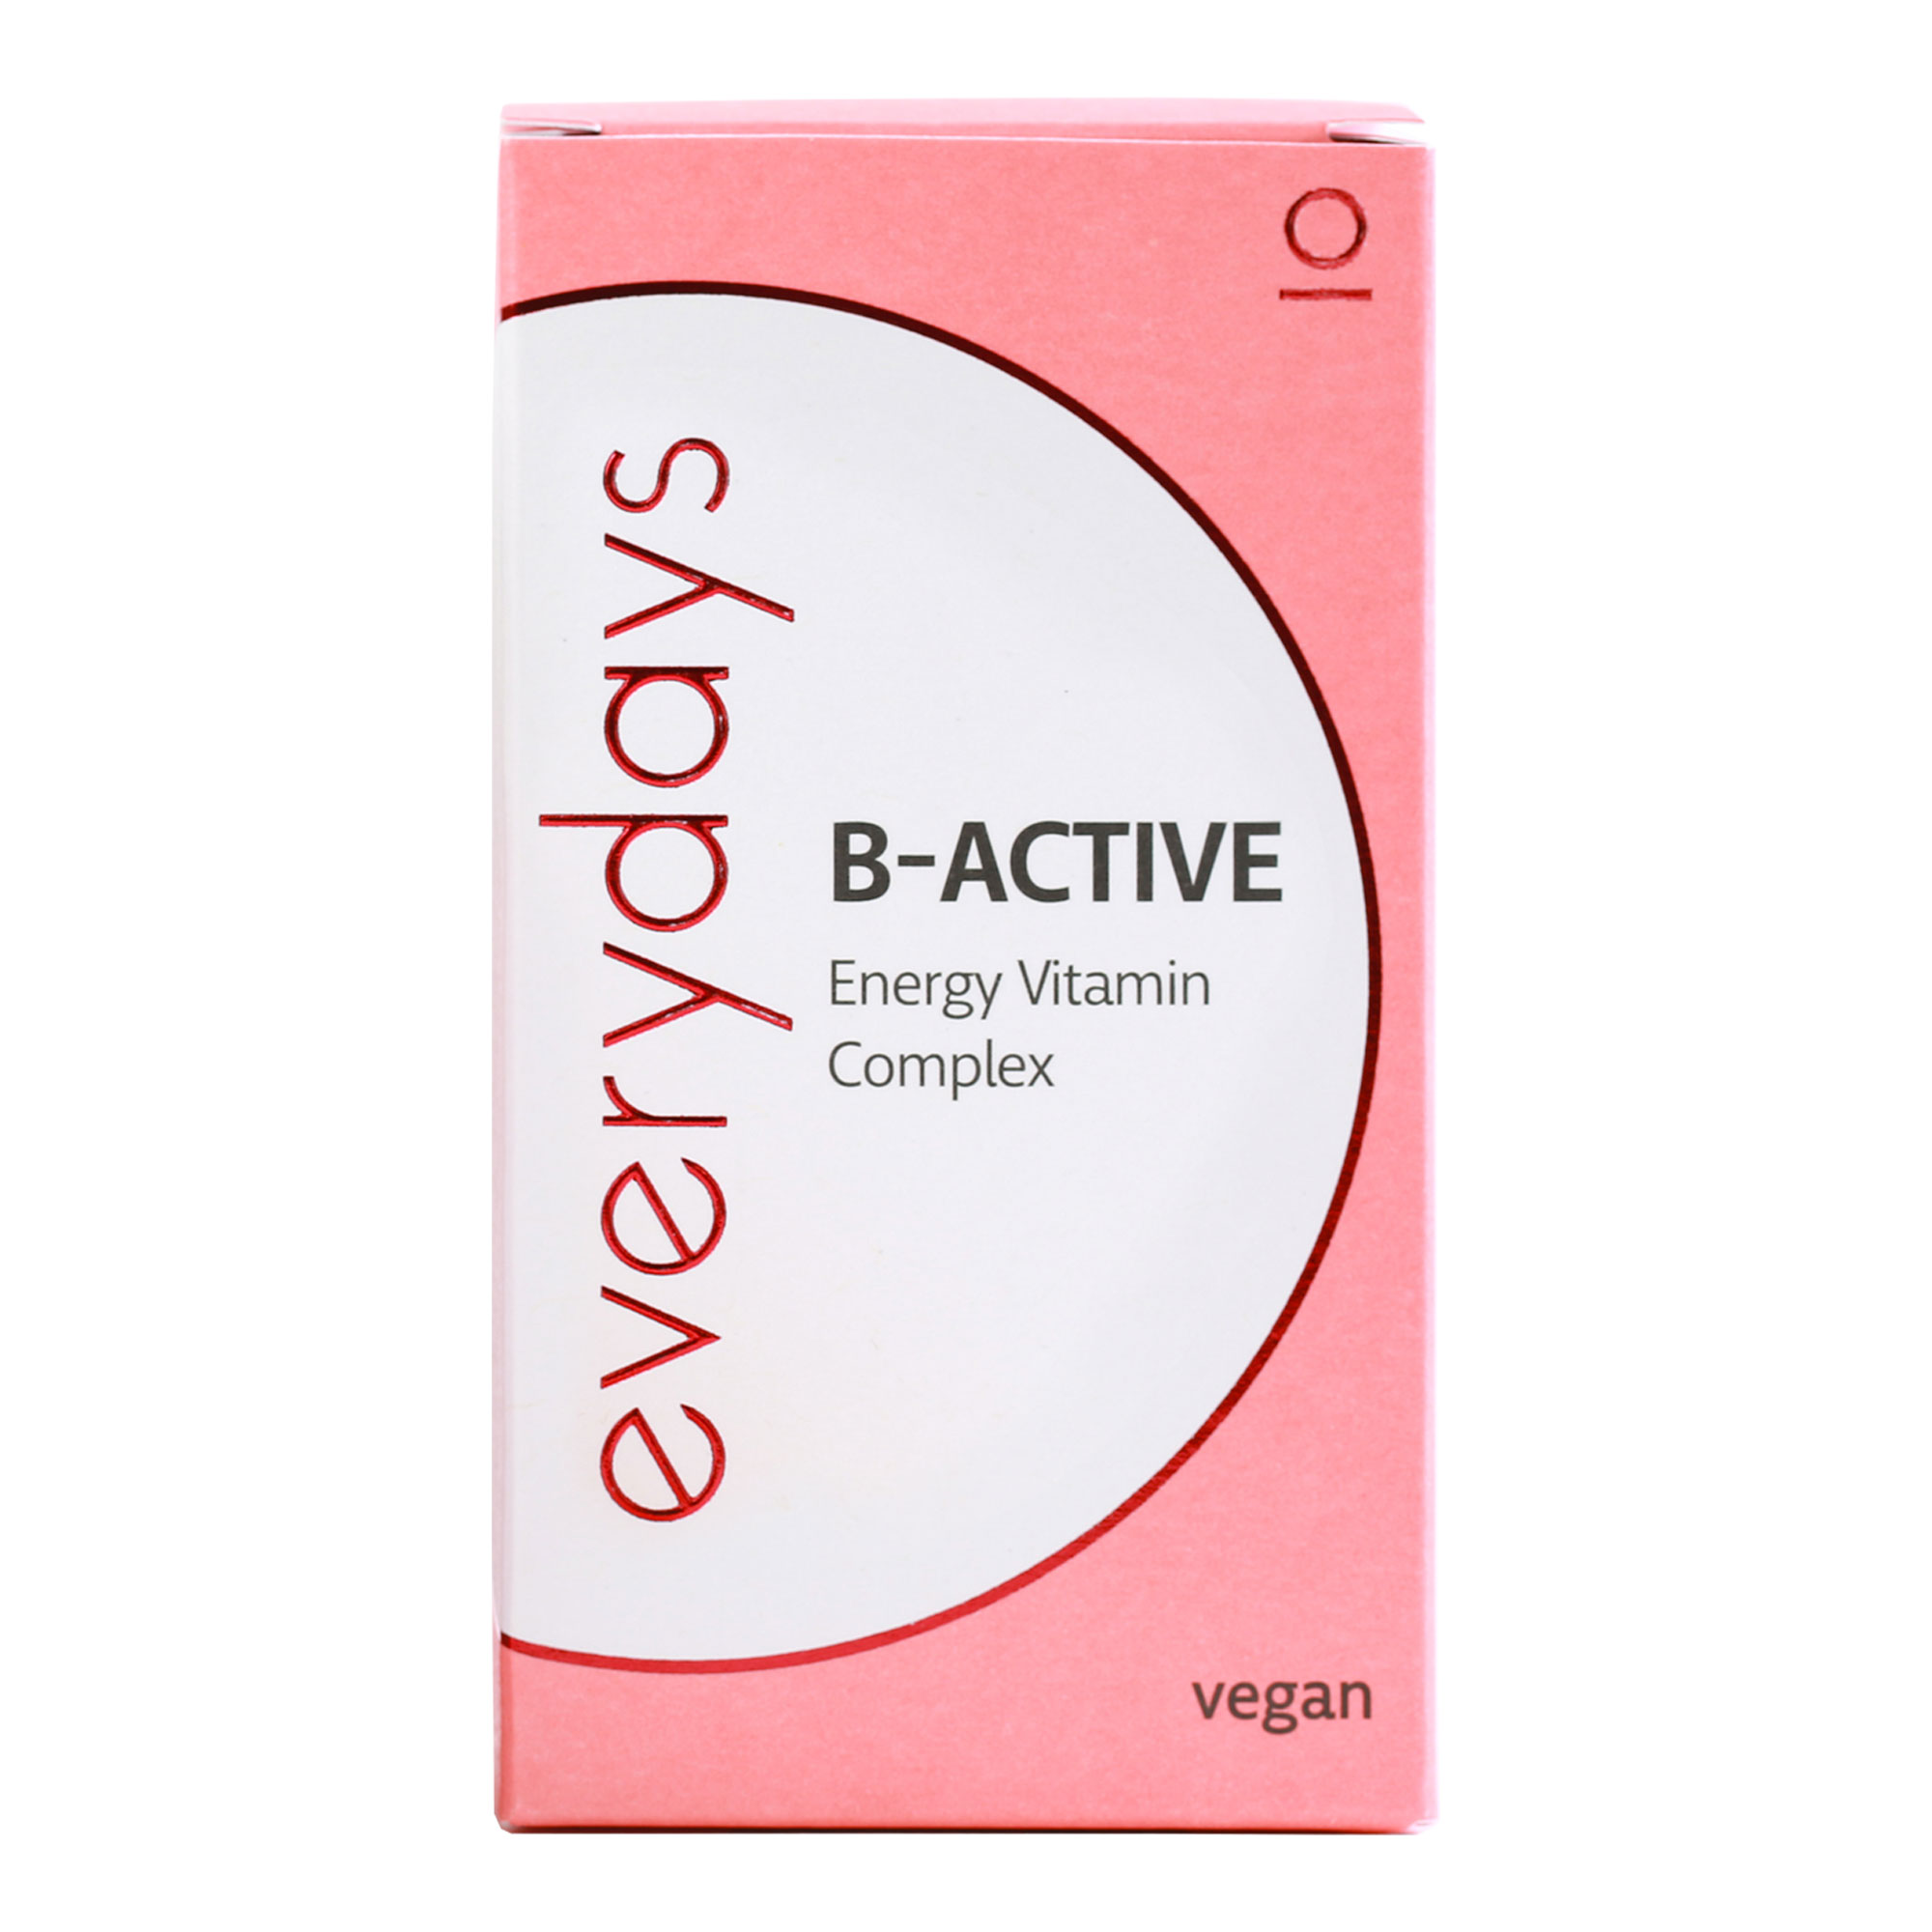 Everydays B-ACTIVE Energy Vitamin Complex Kapseln